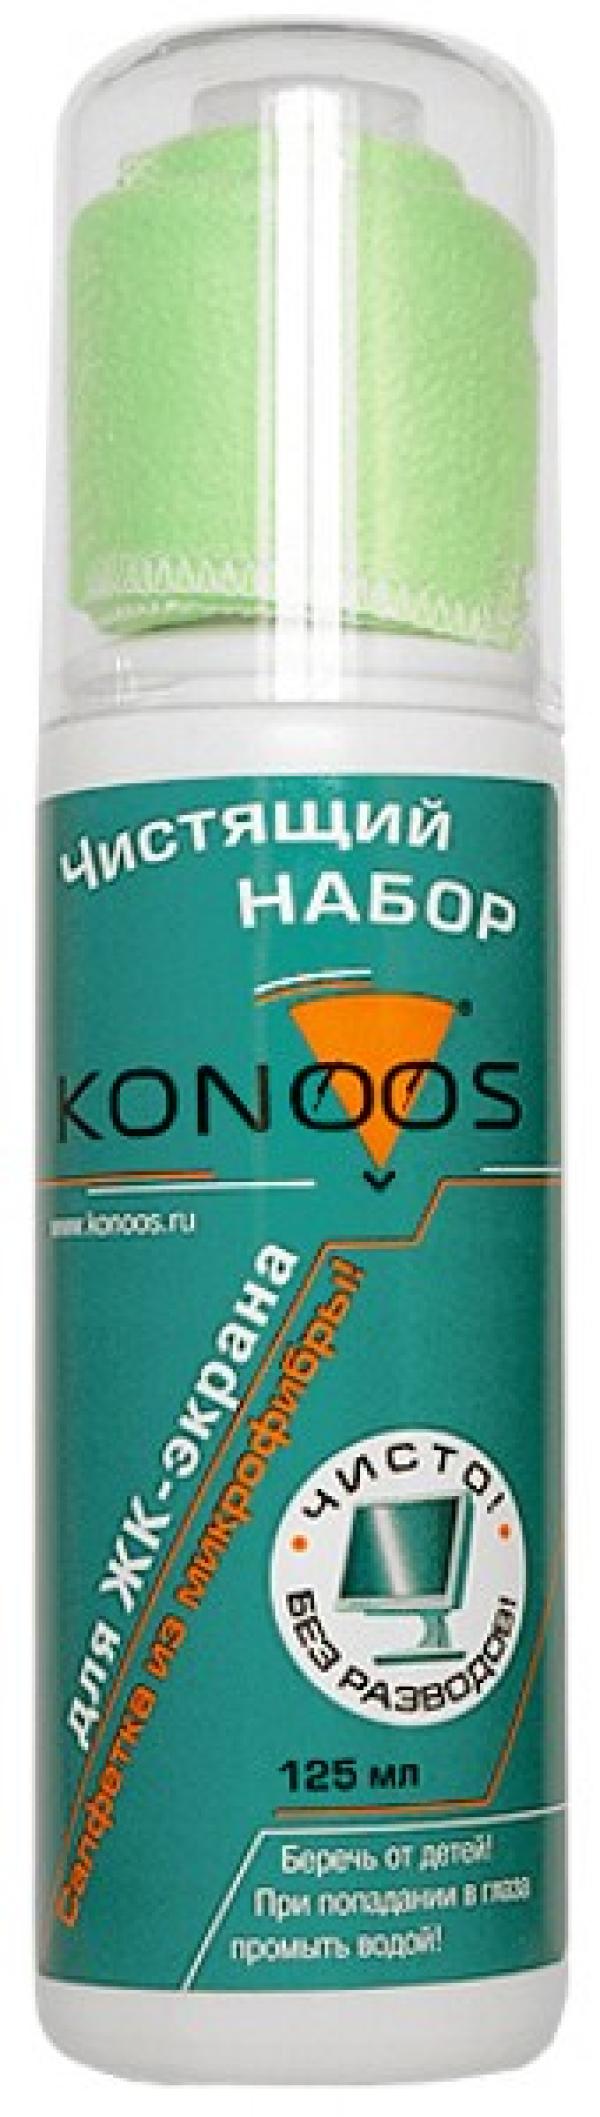 Средство для очистки мониторов ЖК Konoos KT-125, салфетка многоразовая, из микрофибры, 125*125мм + спрей, 125мл